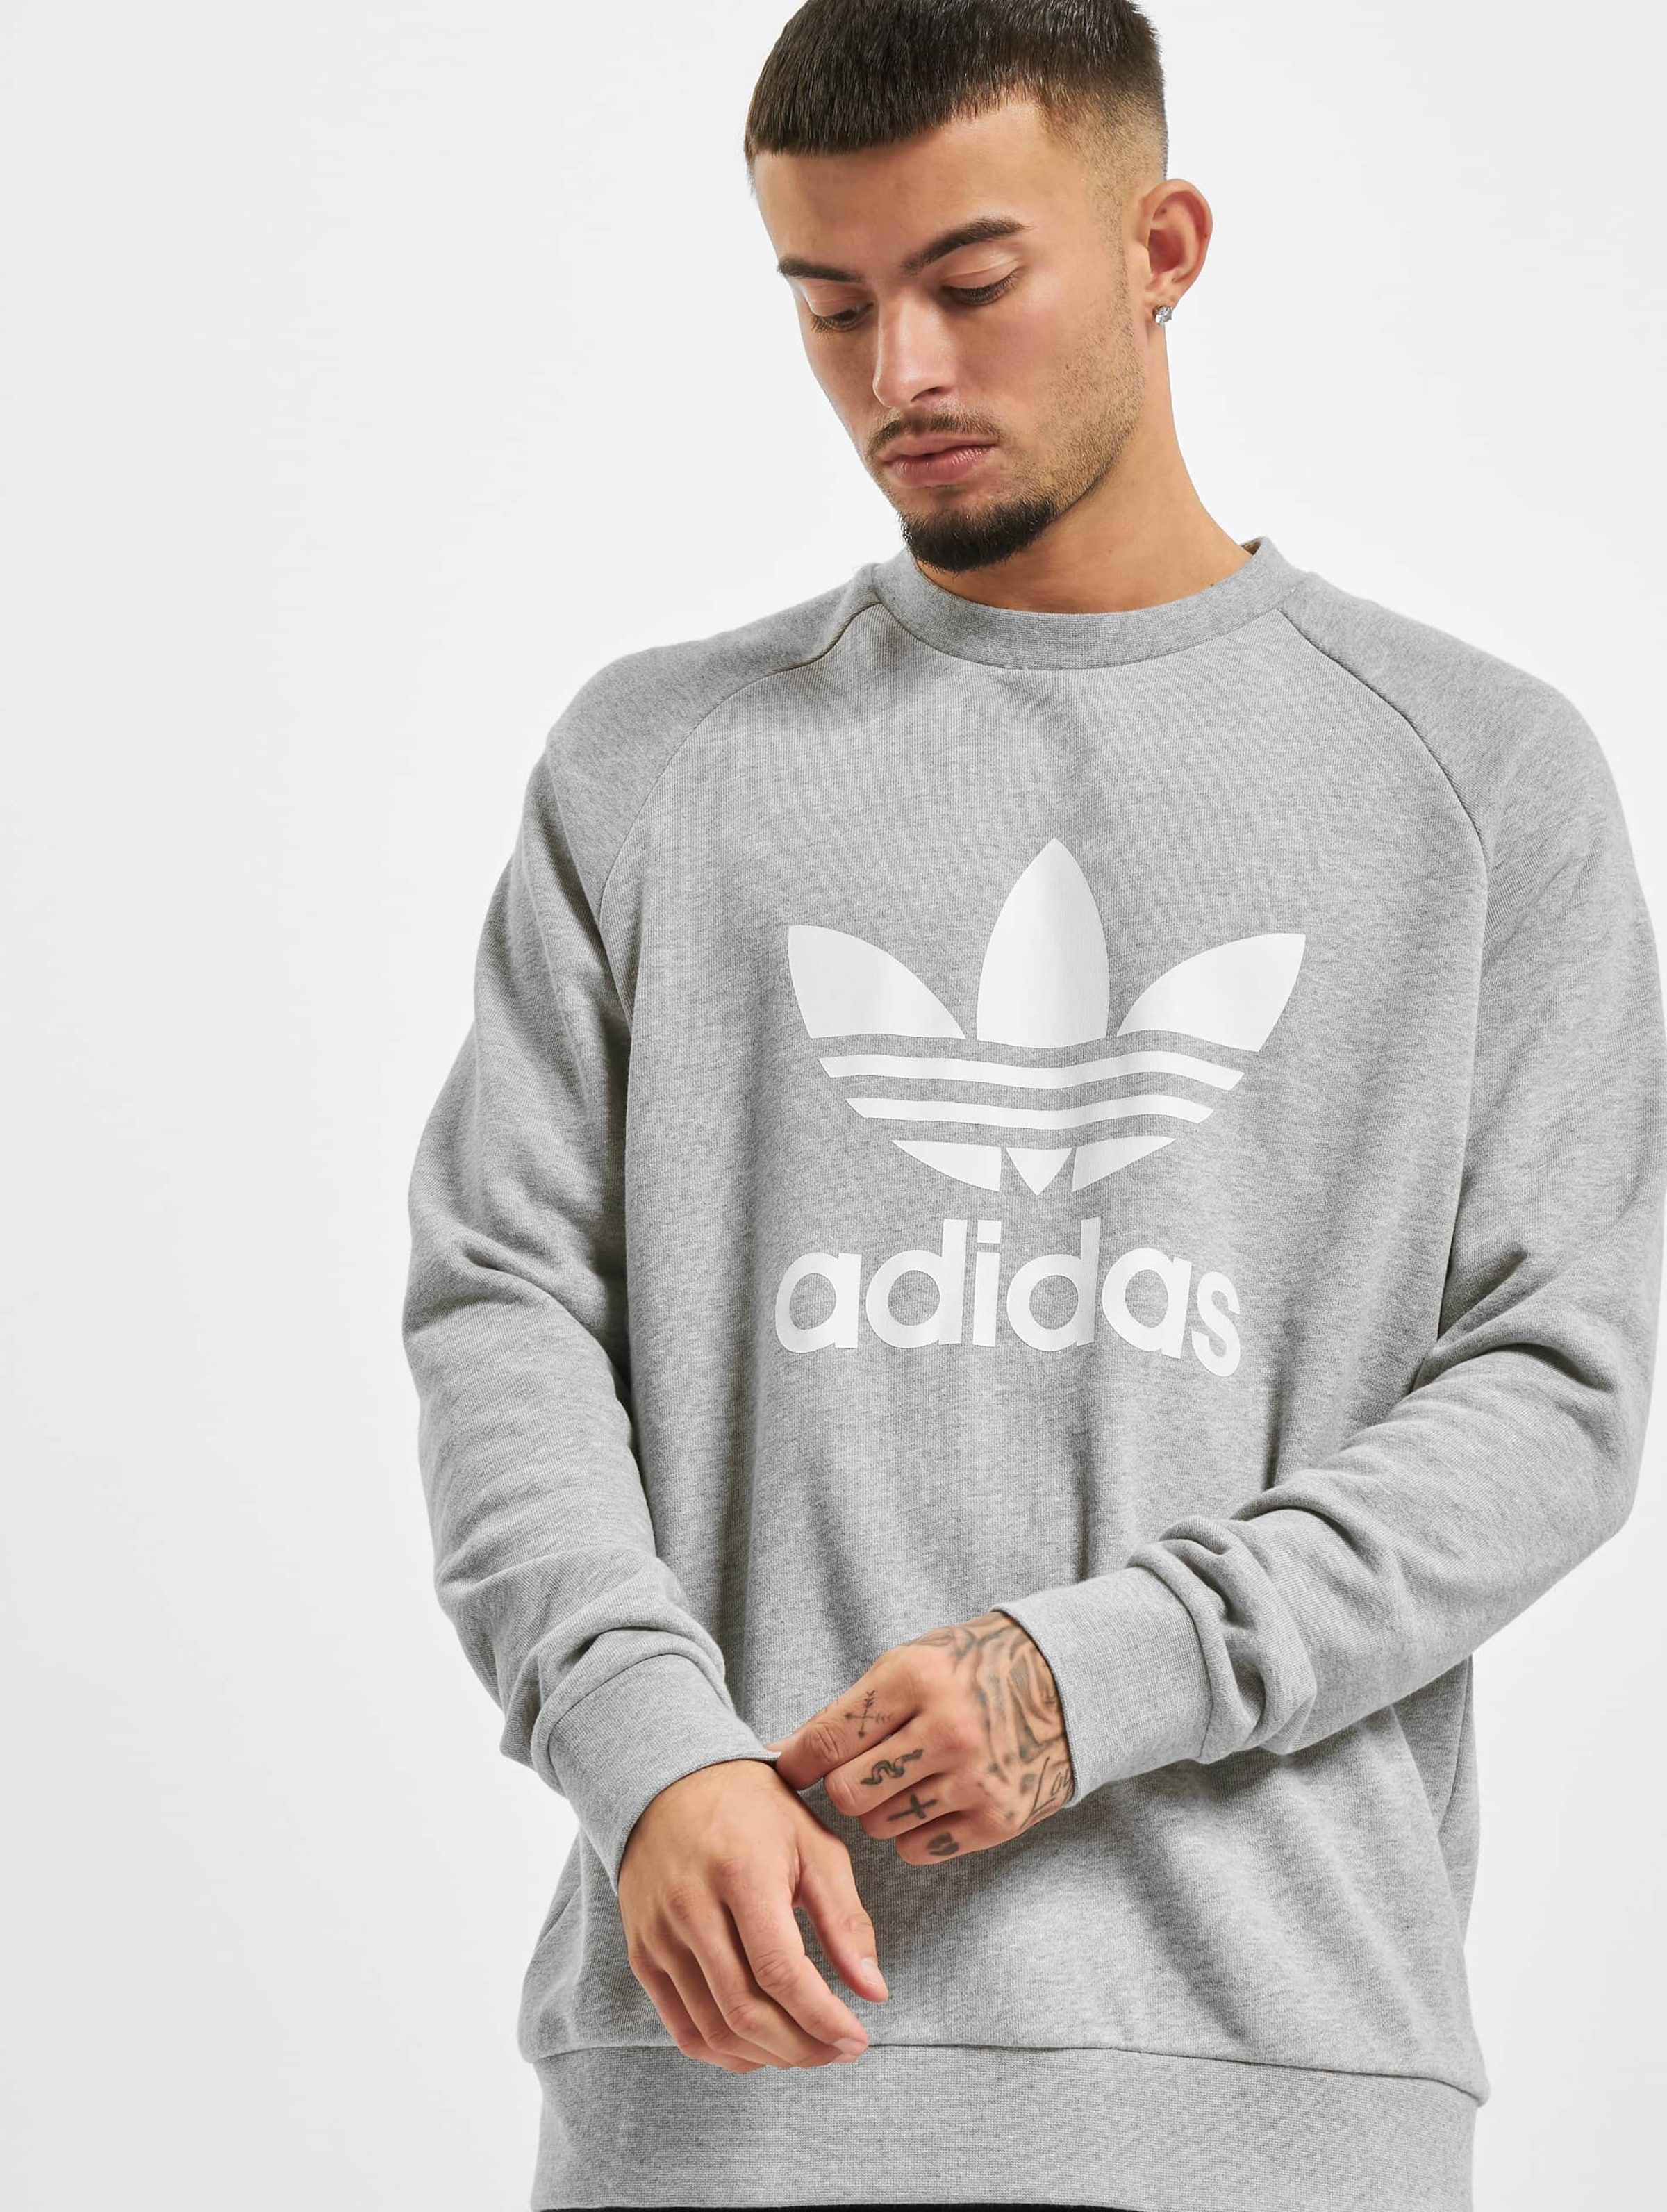 adidas Originals Adidas Trefoil Crew Sweatshirt Mannen op kleur grijs, Maat 2XL